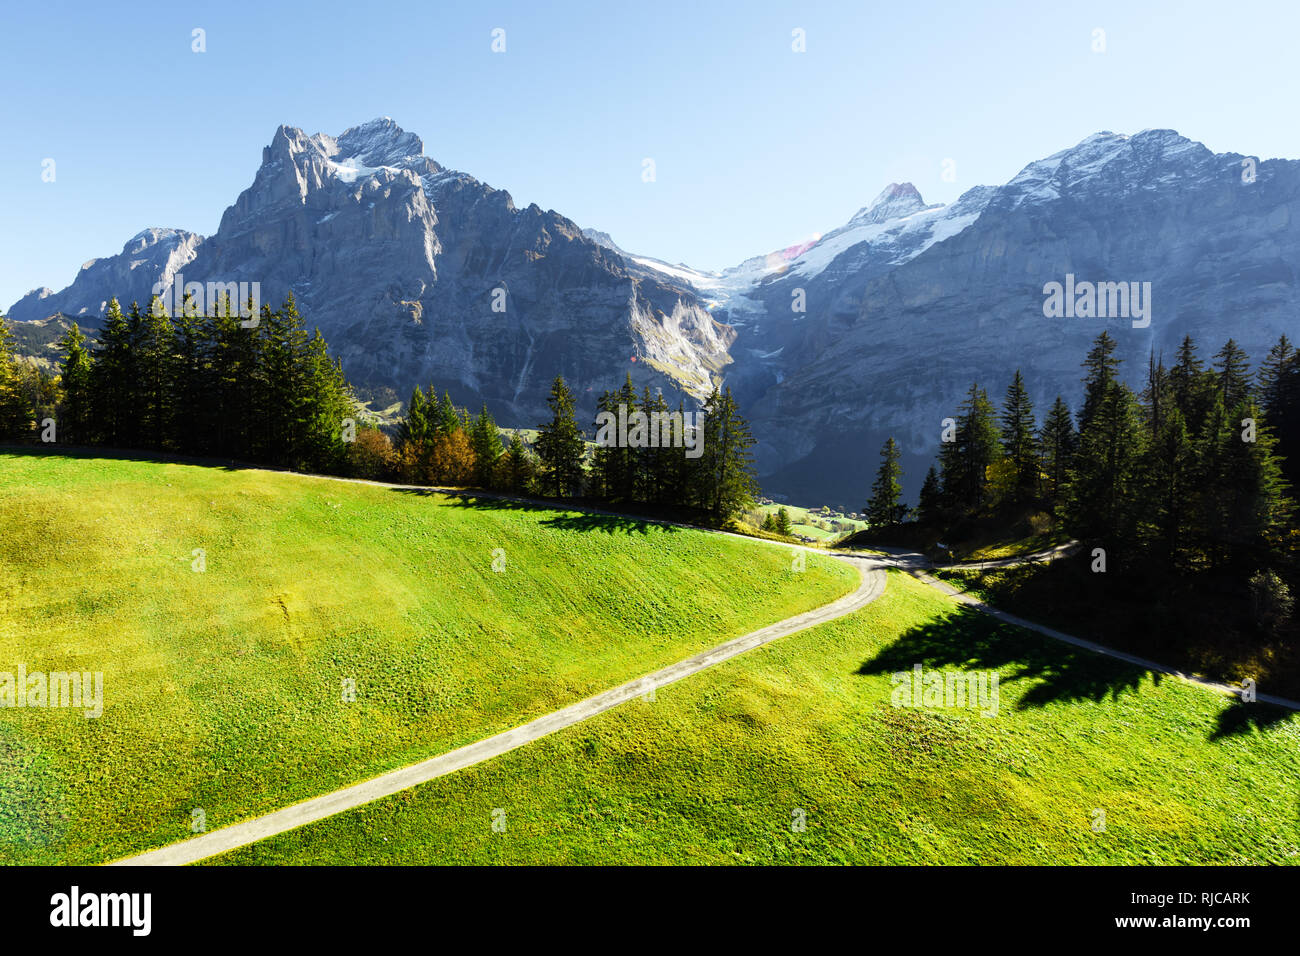 Schweizer Alpen Berge. Schneebedeckten Gipfel des Wetterhorns Rosenhorn, Mittelhorn und für den Hintergrund. Tal von Grindelwald, Schweiz. Landschaftsfotografie Stockfoto